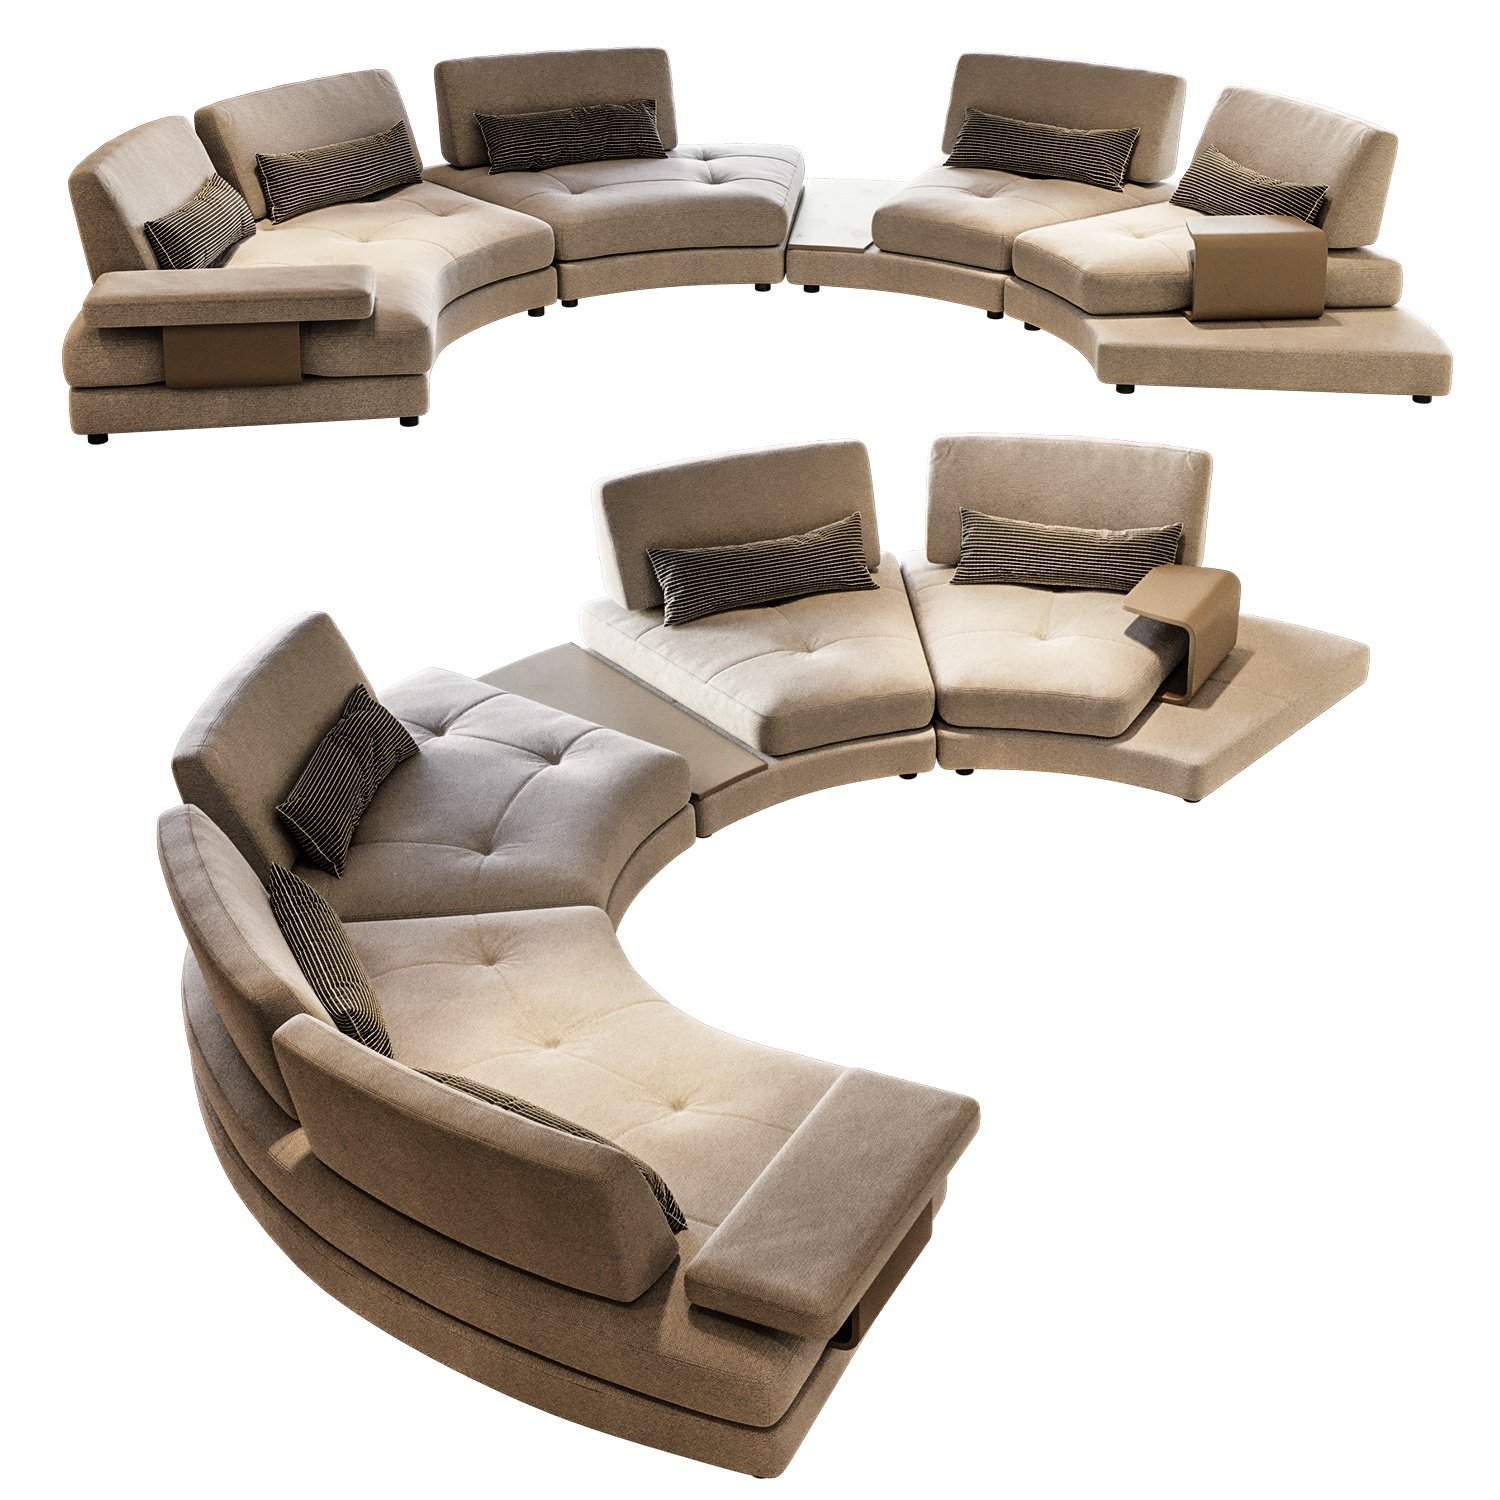 多人弧形圆形转角沙发3d模型下载